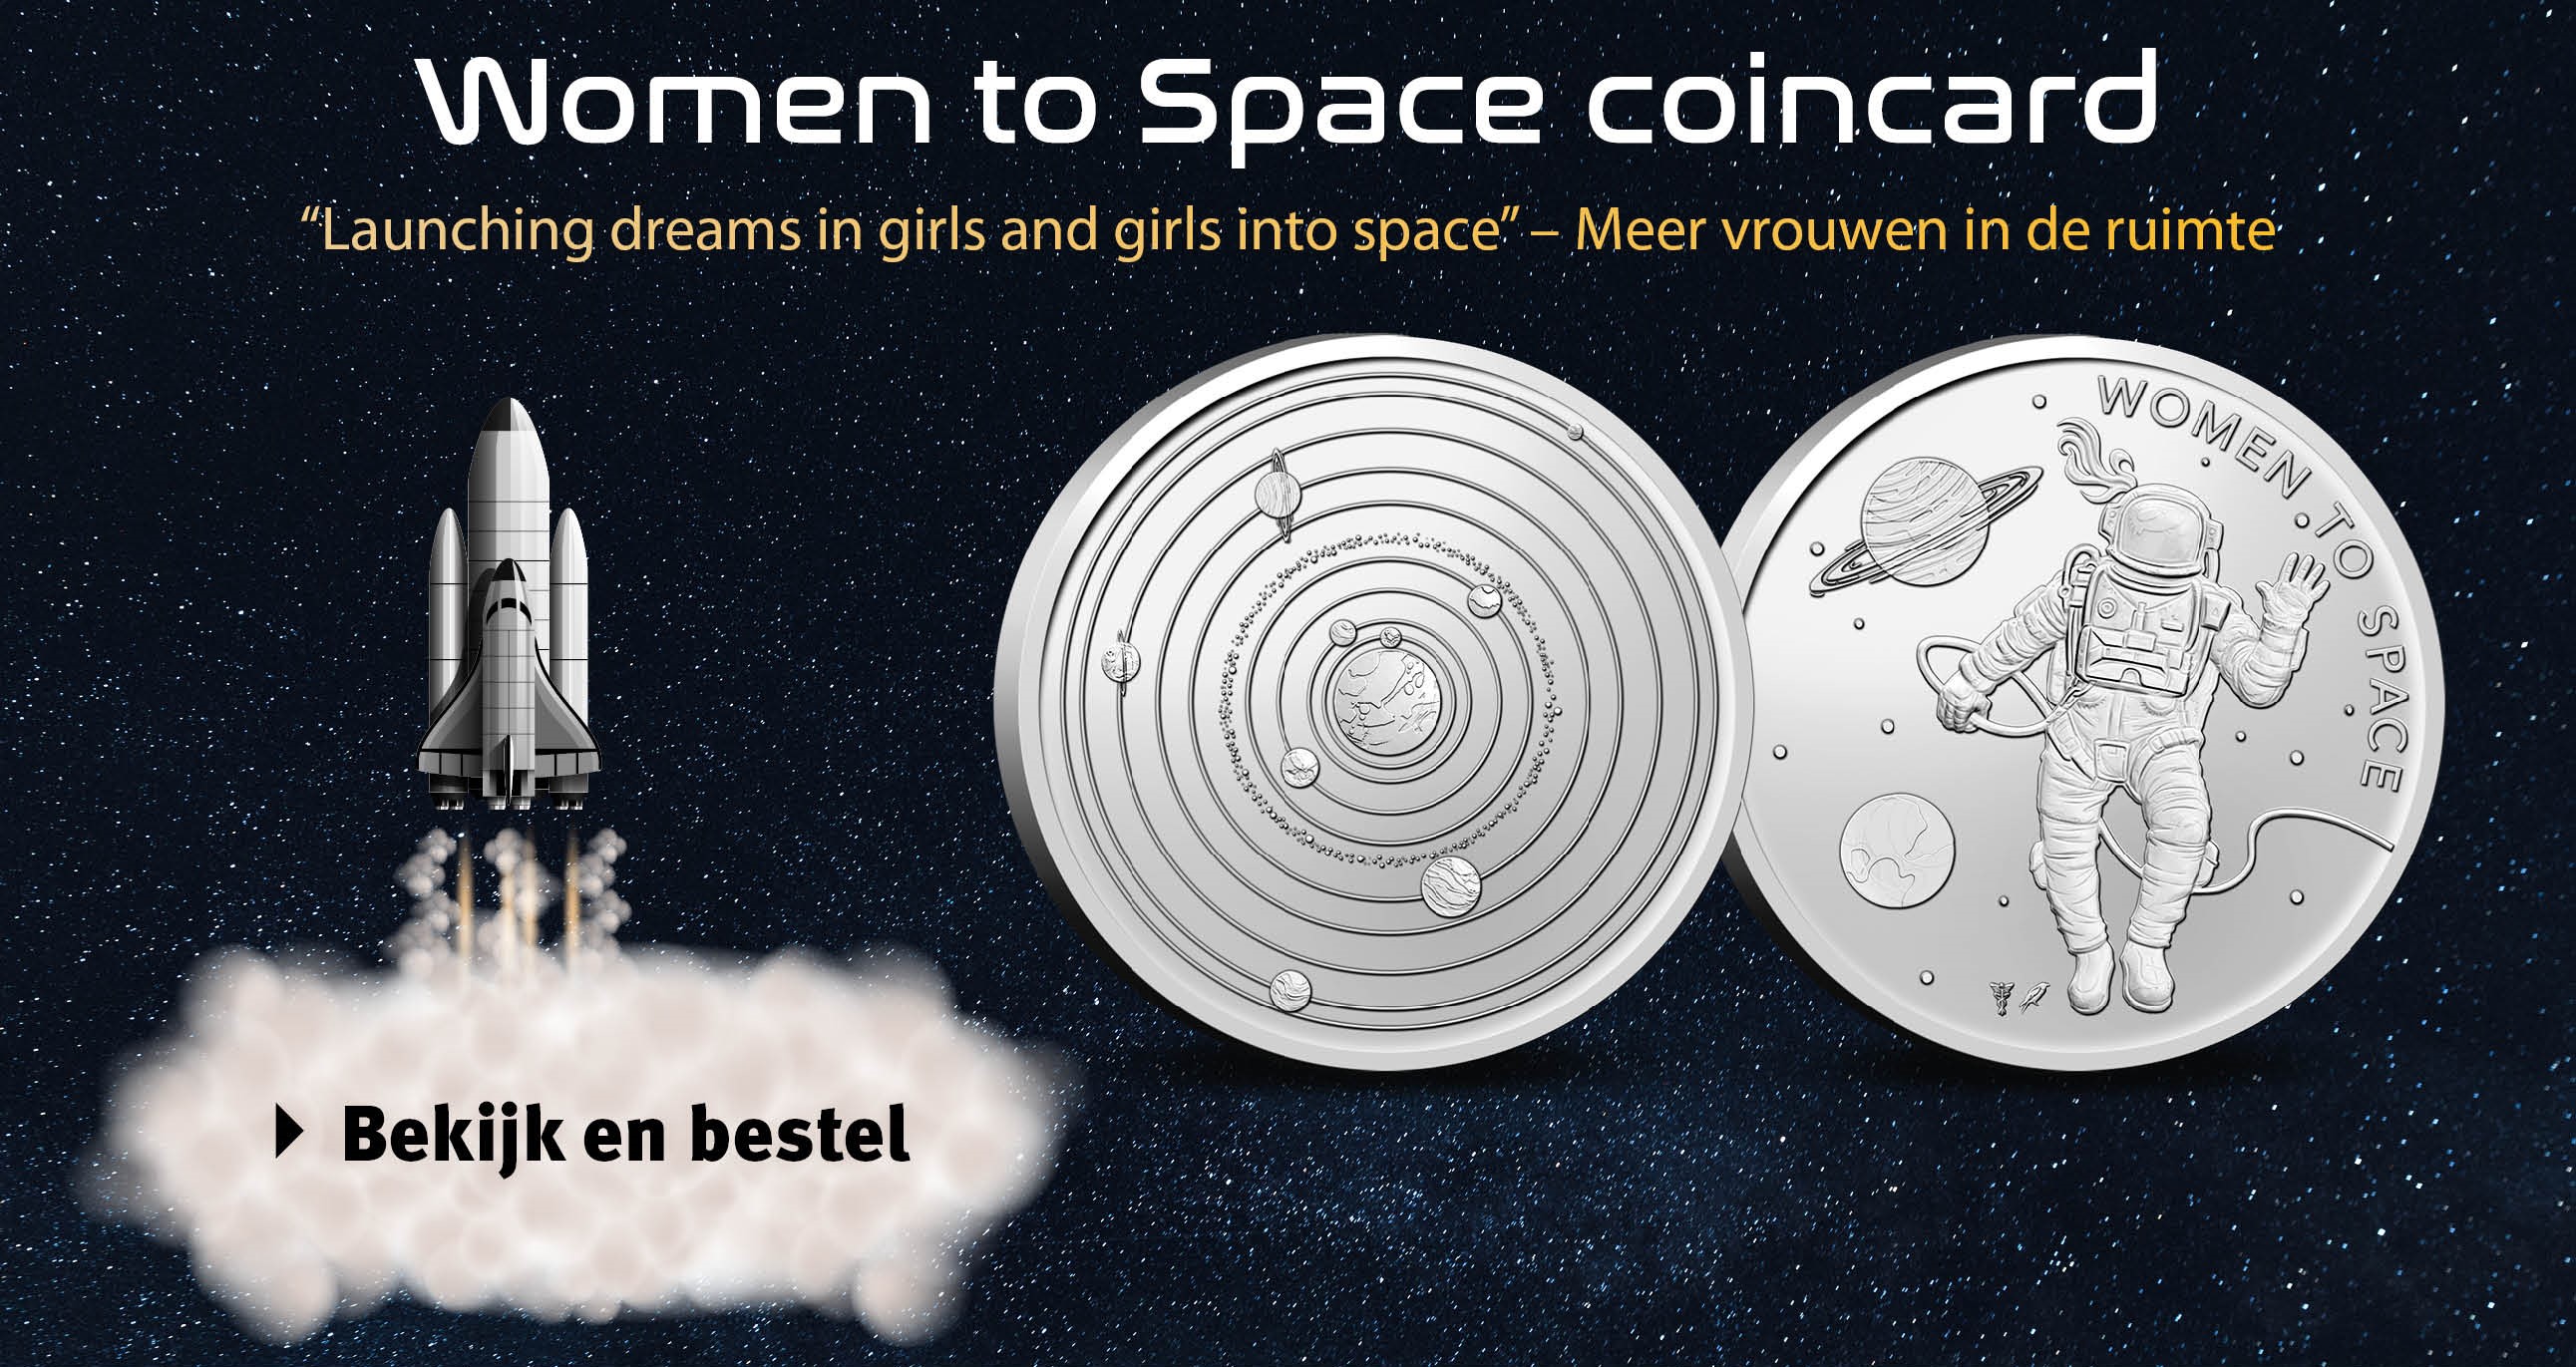 Bekijk en bestel: Women to space coincard